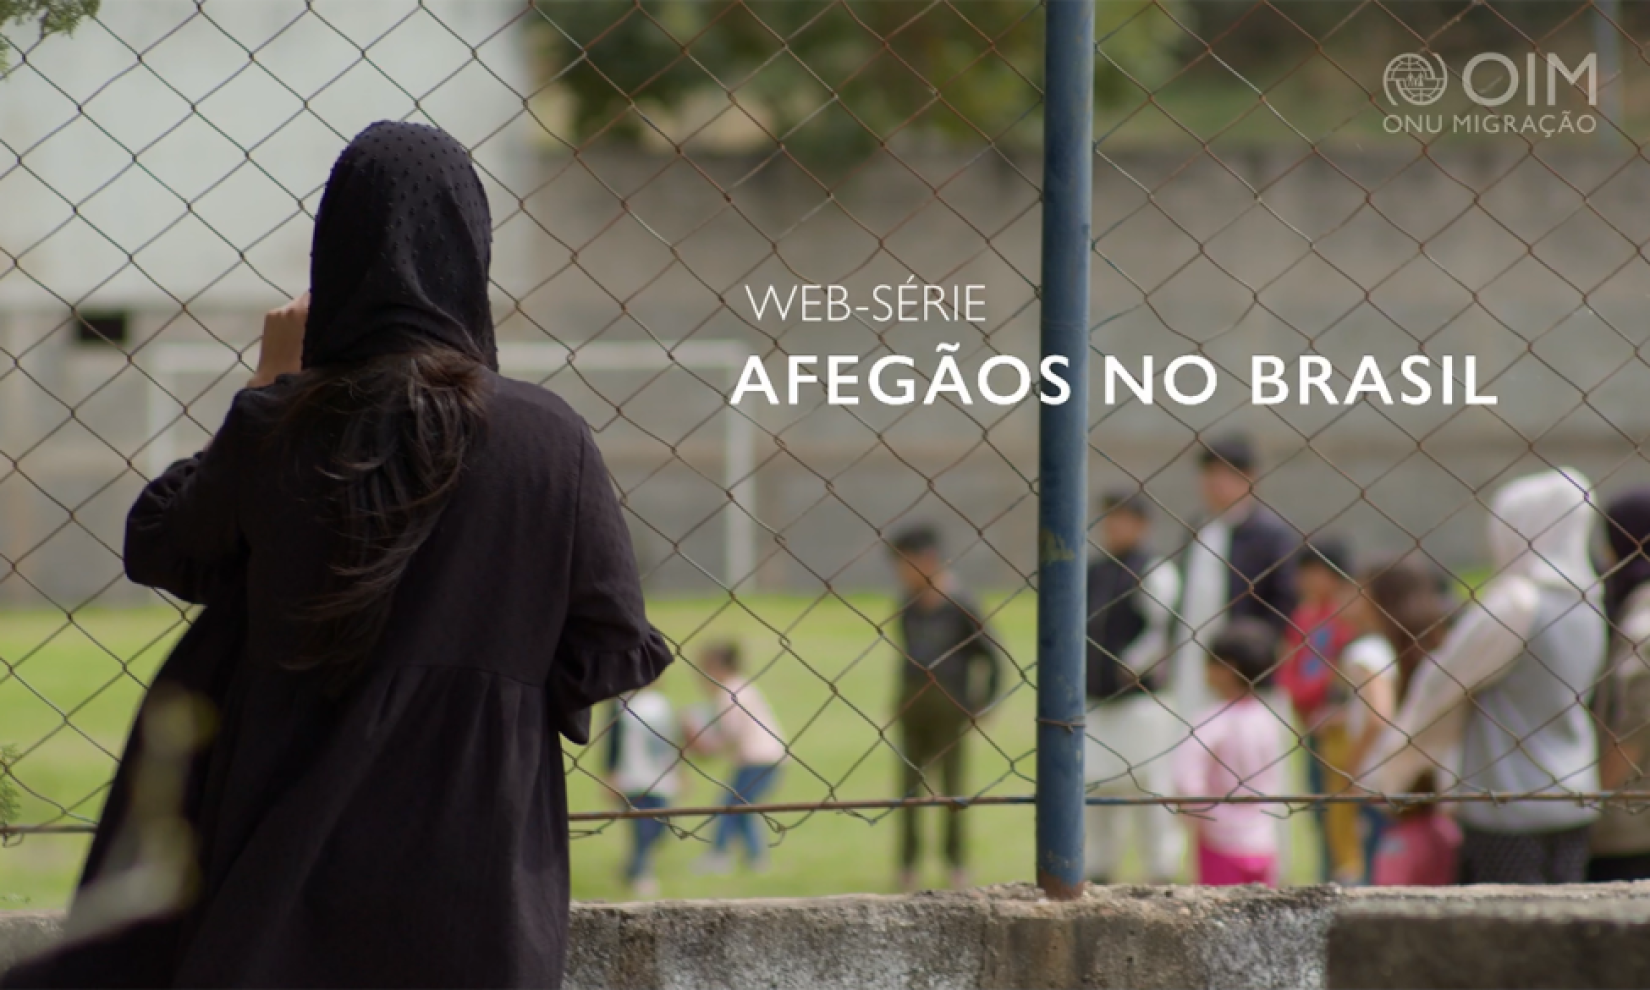 Web-série lançada pela OIM retrata a acolhida humanitária de afegãos no Brasil.